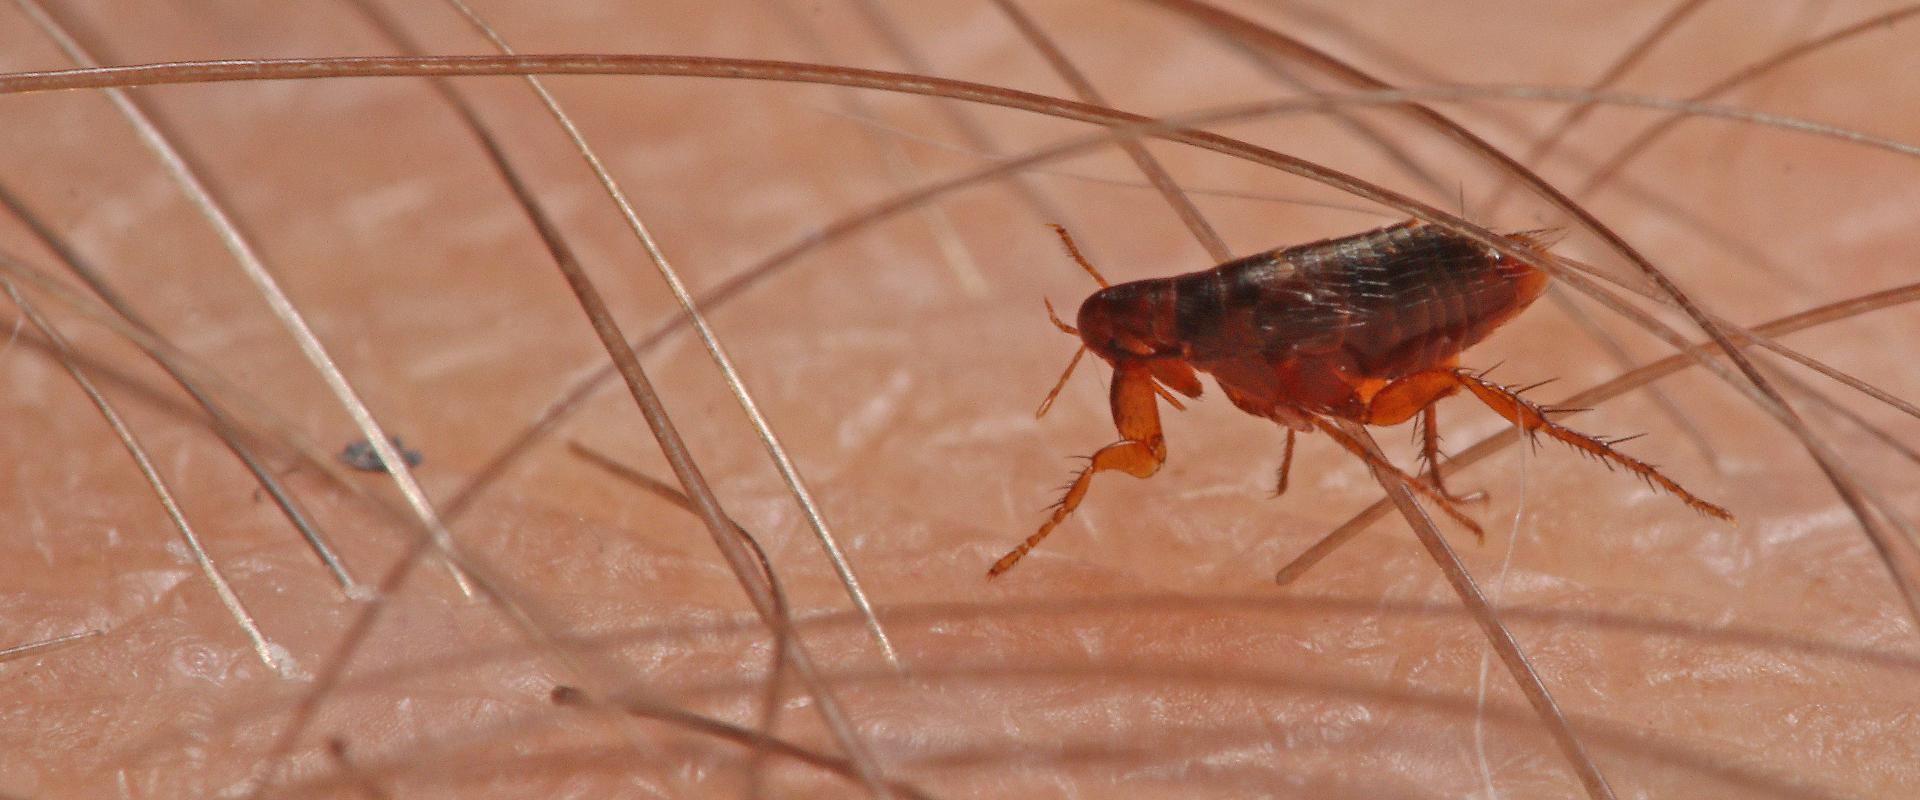 a flea on human skin in meridian idaho